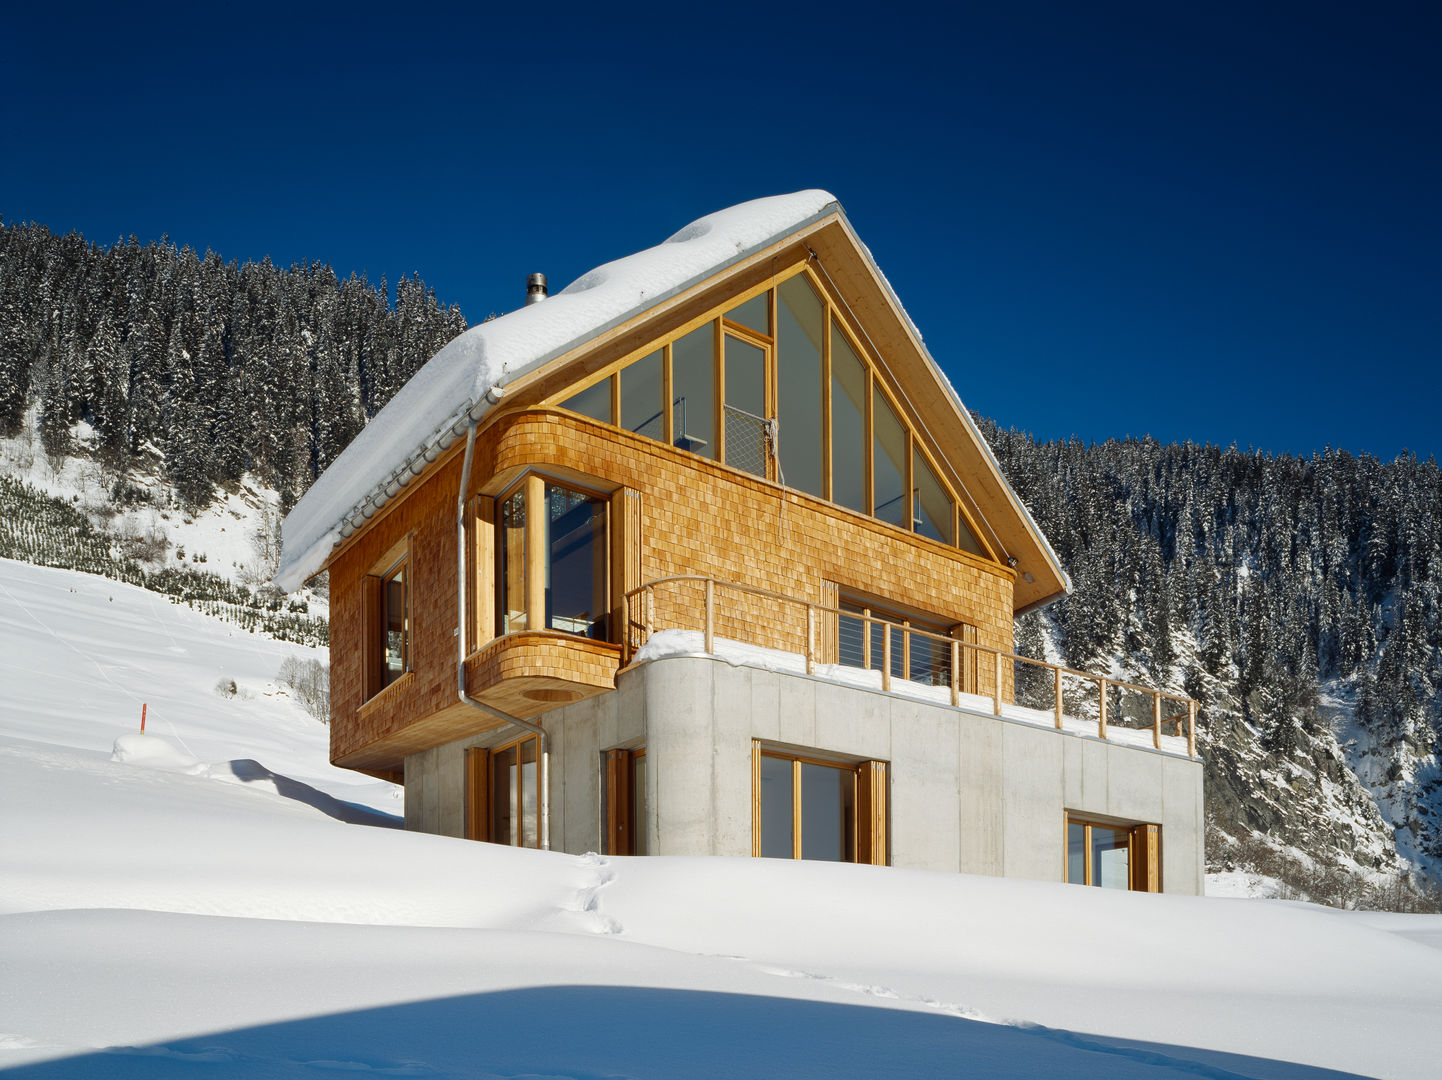 Ferienhaus in den Bündner Alpen, Drexler Architekten AG Drexler Architekten AG Espaços